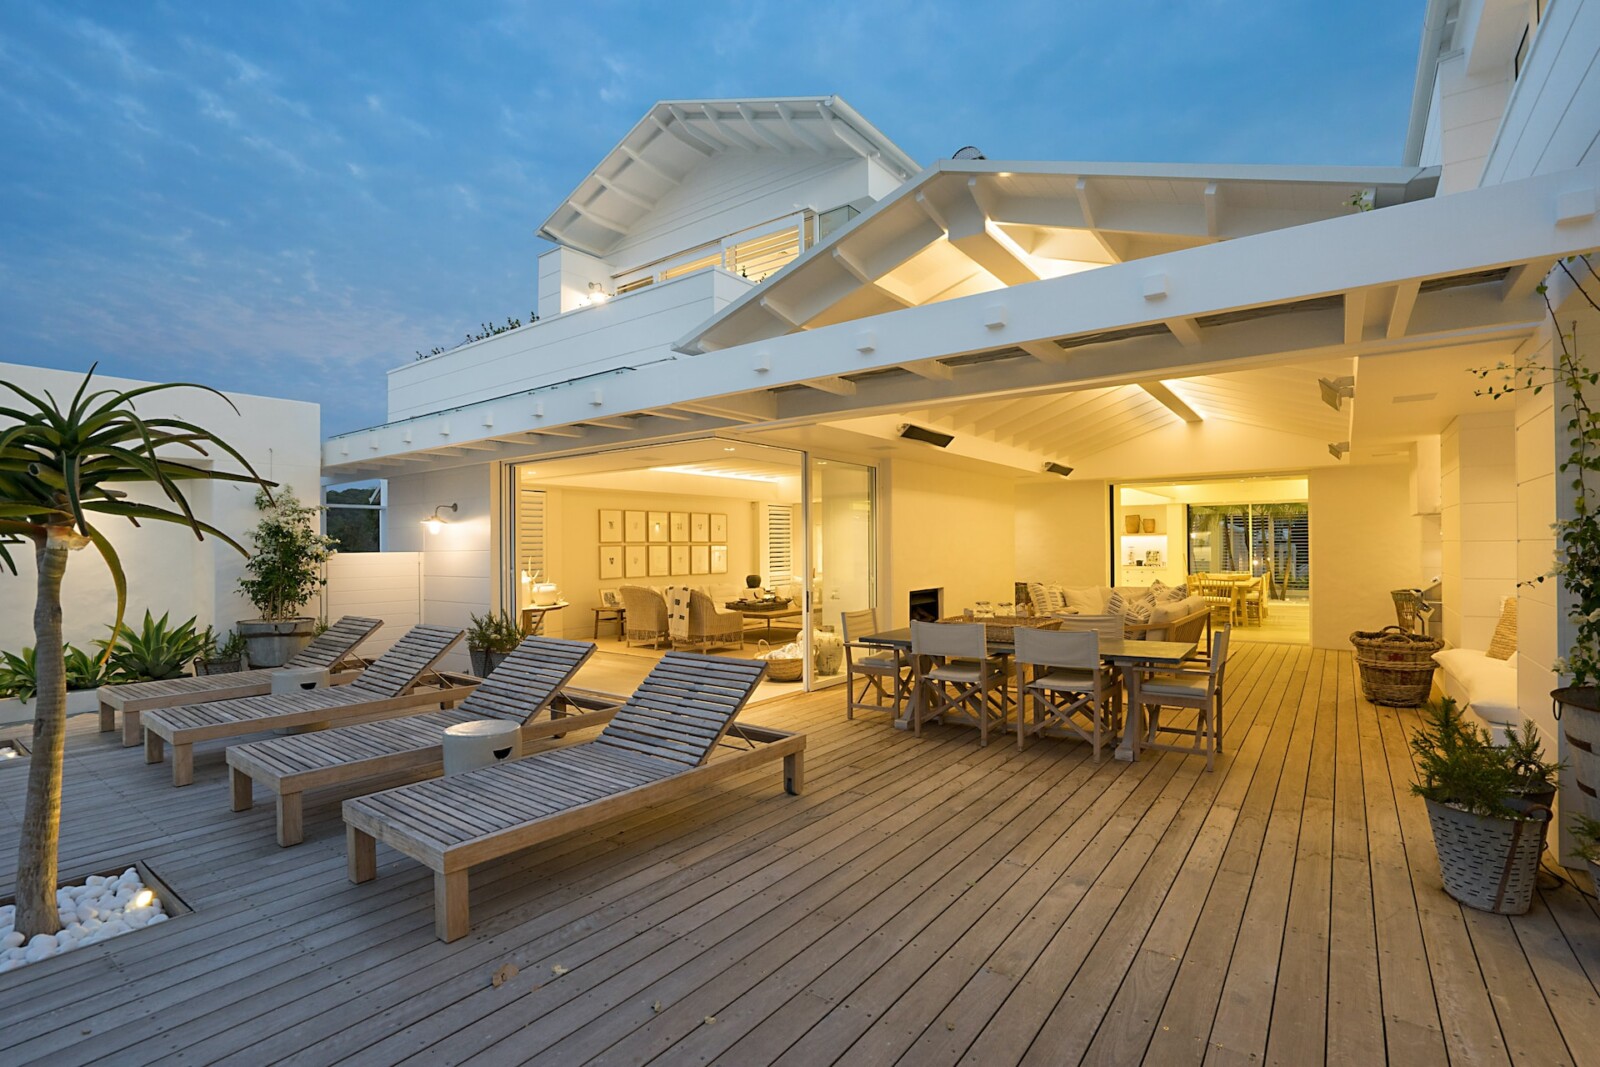 Patio blanc pour aménager la terrasse extérieur en bois, composée de transats en bois, d'une table à manger et d'un palmier.